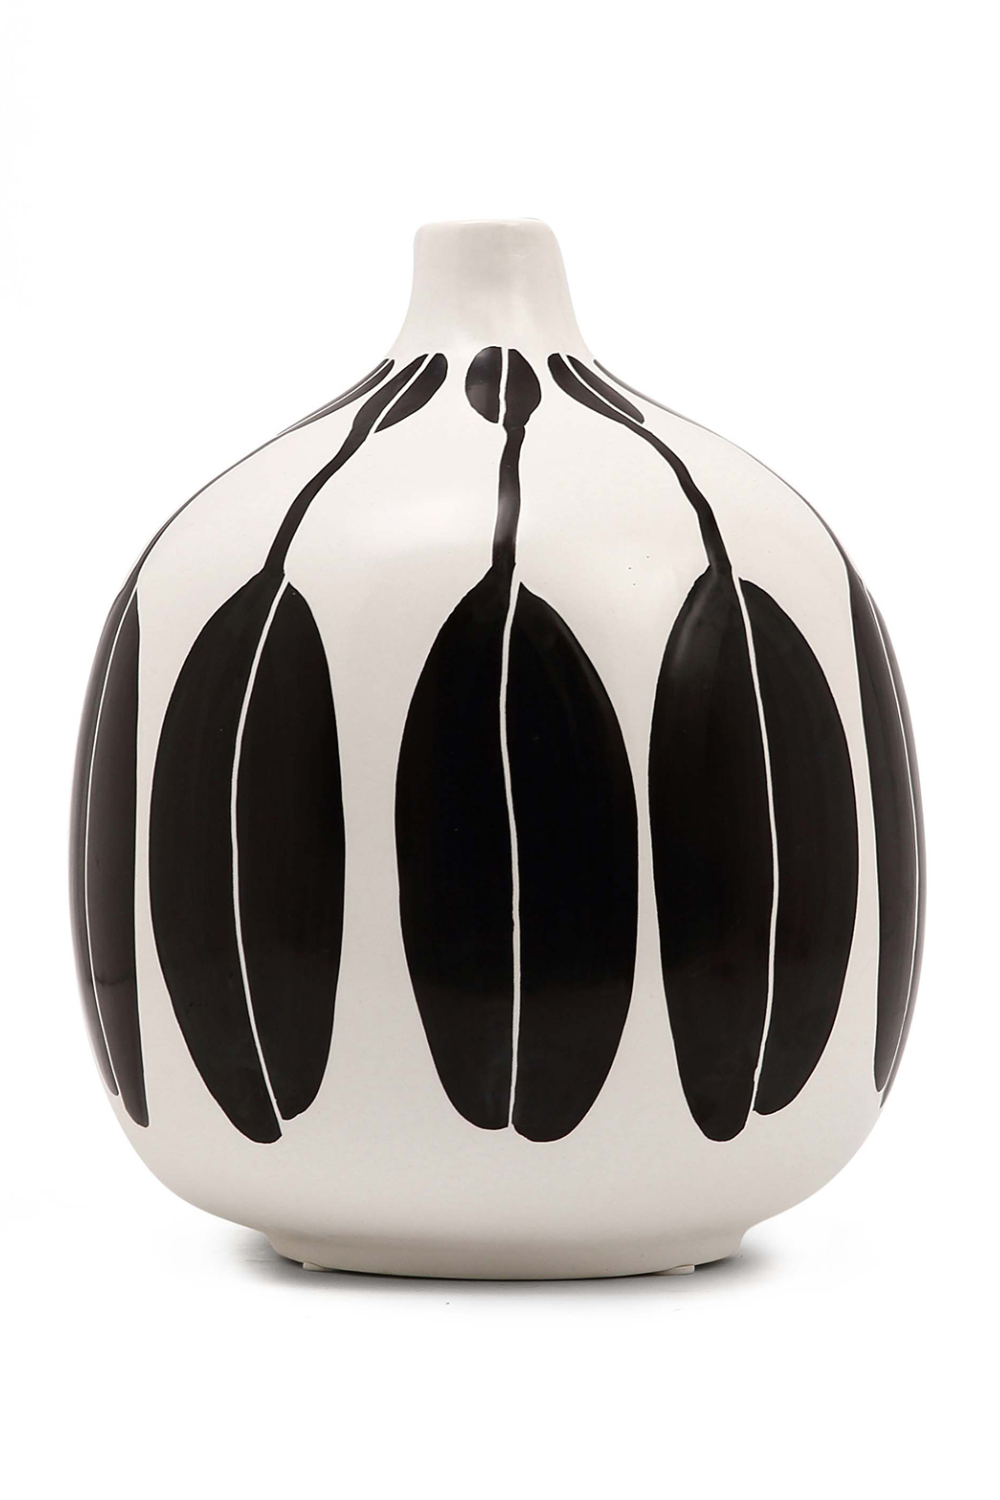 Painted Ceramic Round Vase | Liang & Eimil Morton | Oroa.com